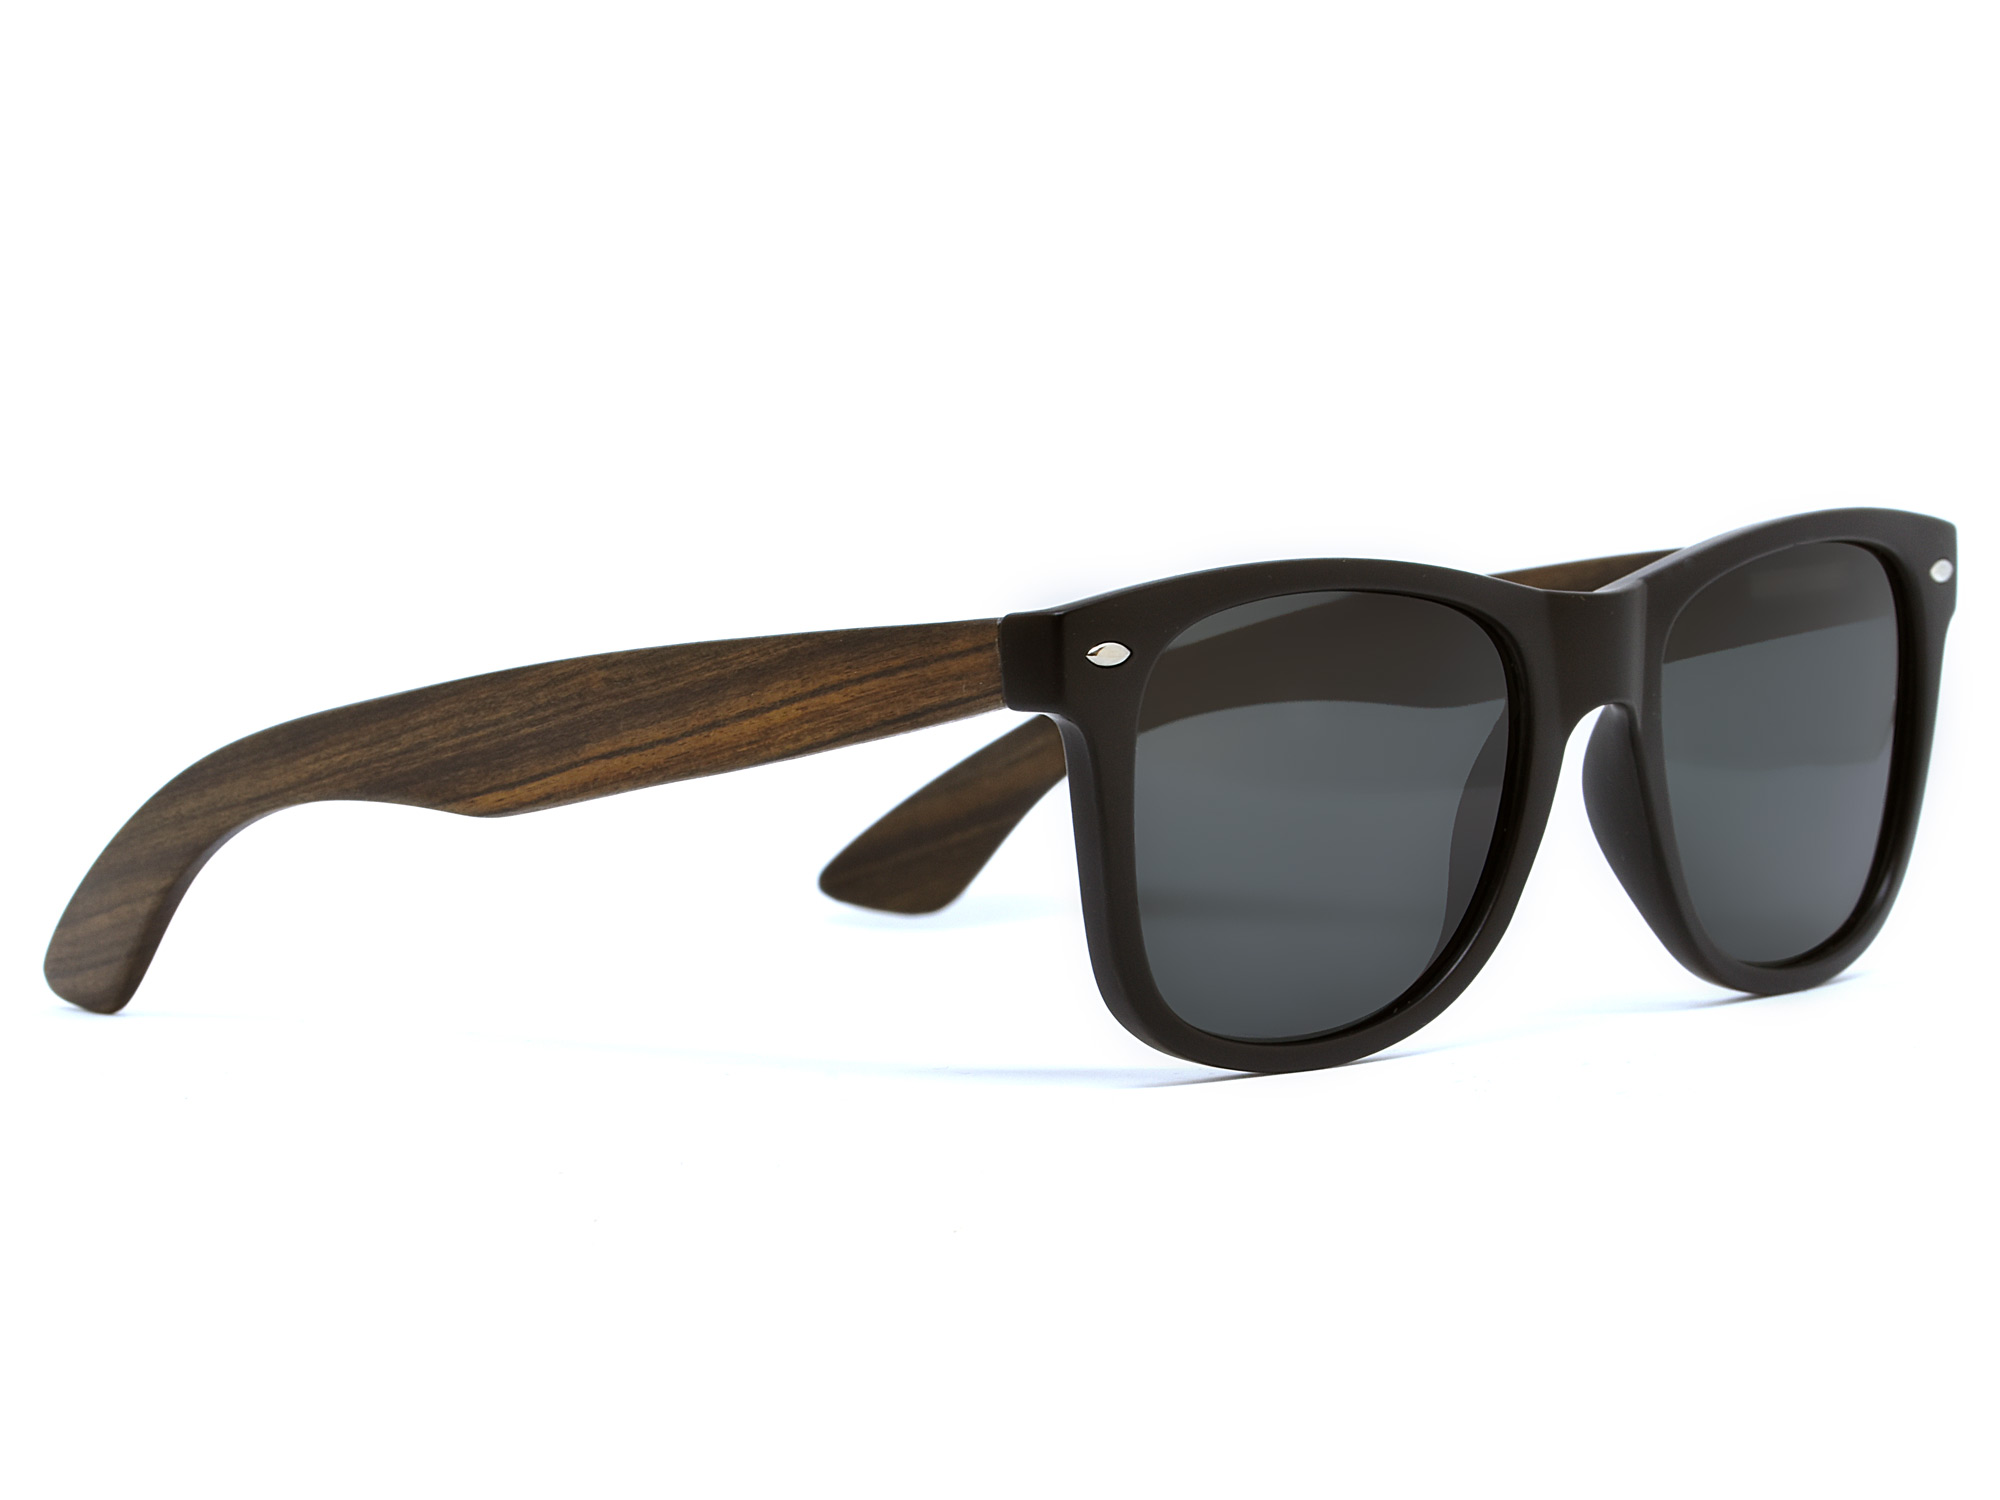 Ebony wood sunglasses wayfarer style with black polarized lenses